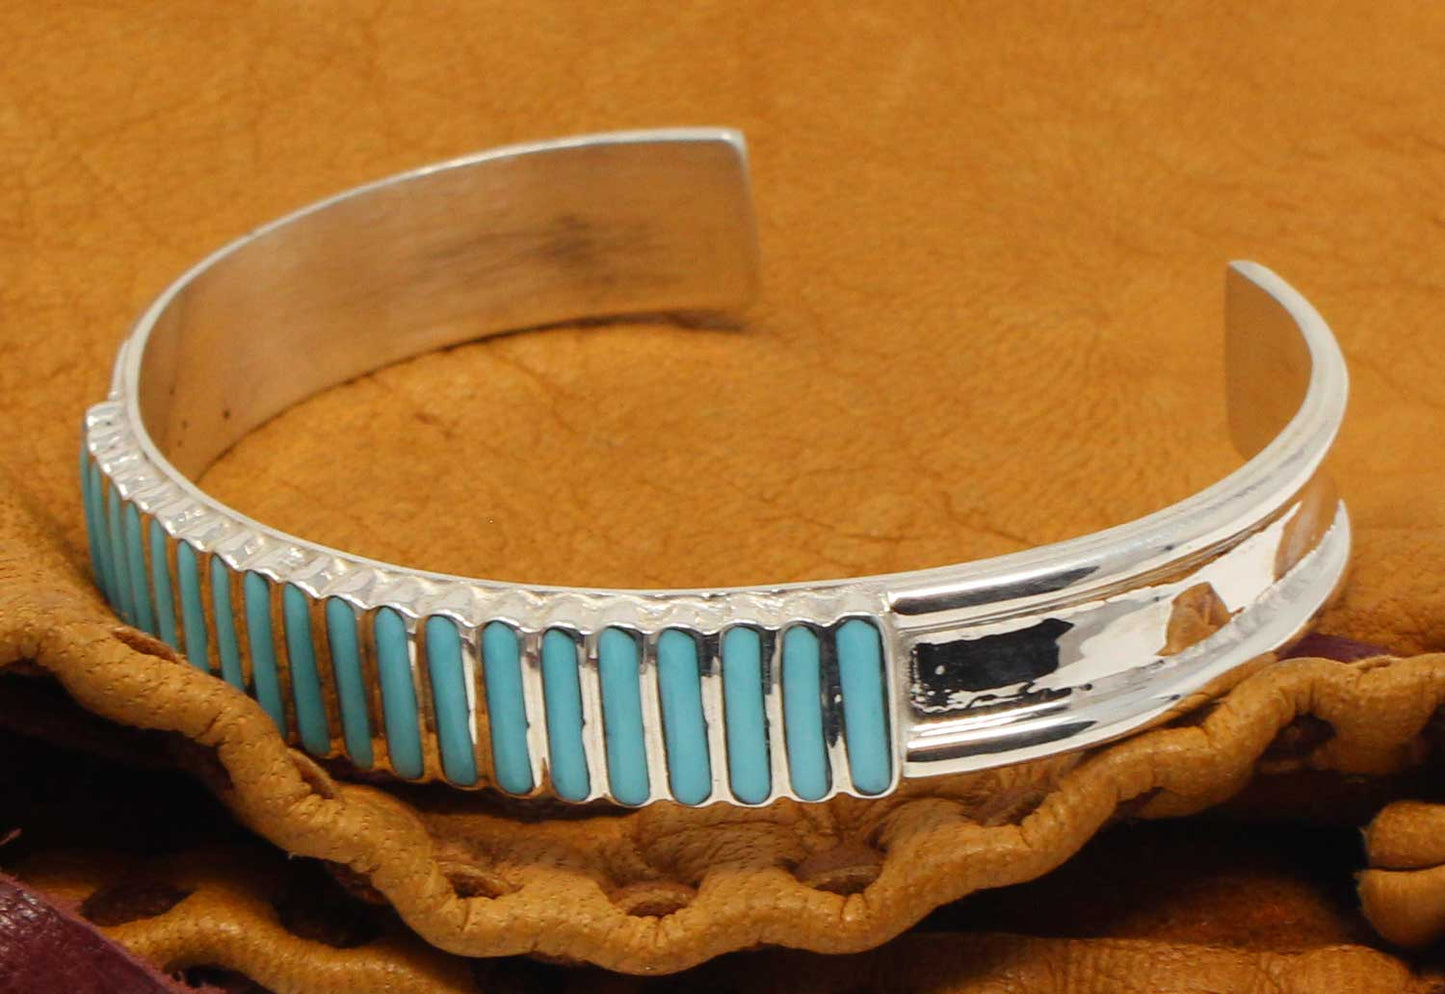 Zuni Turquoise Inlay Bracelet